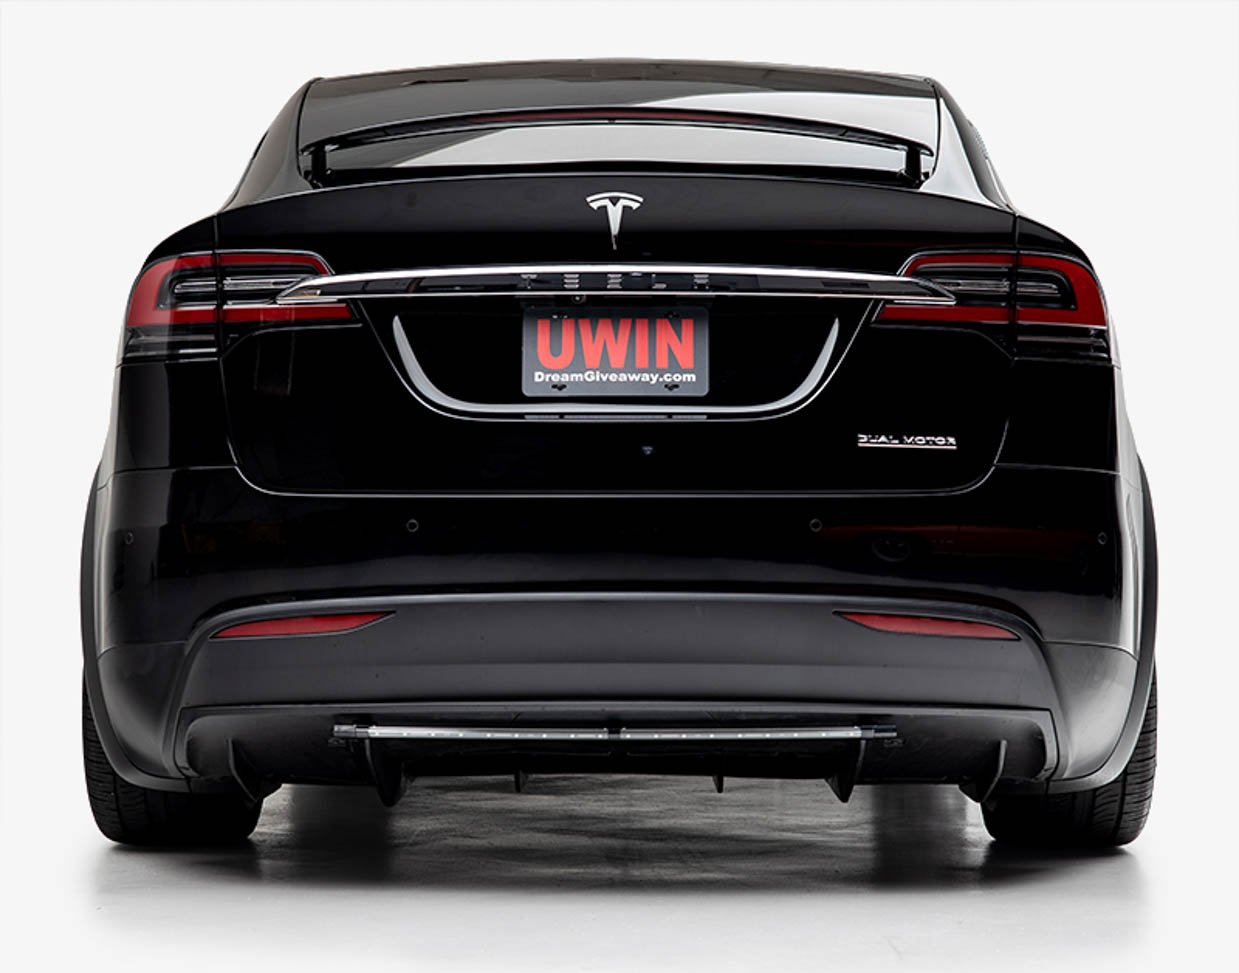 Win a Loaded 2020 Tesla Model X